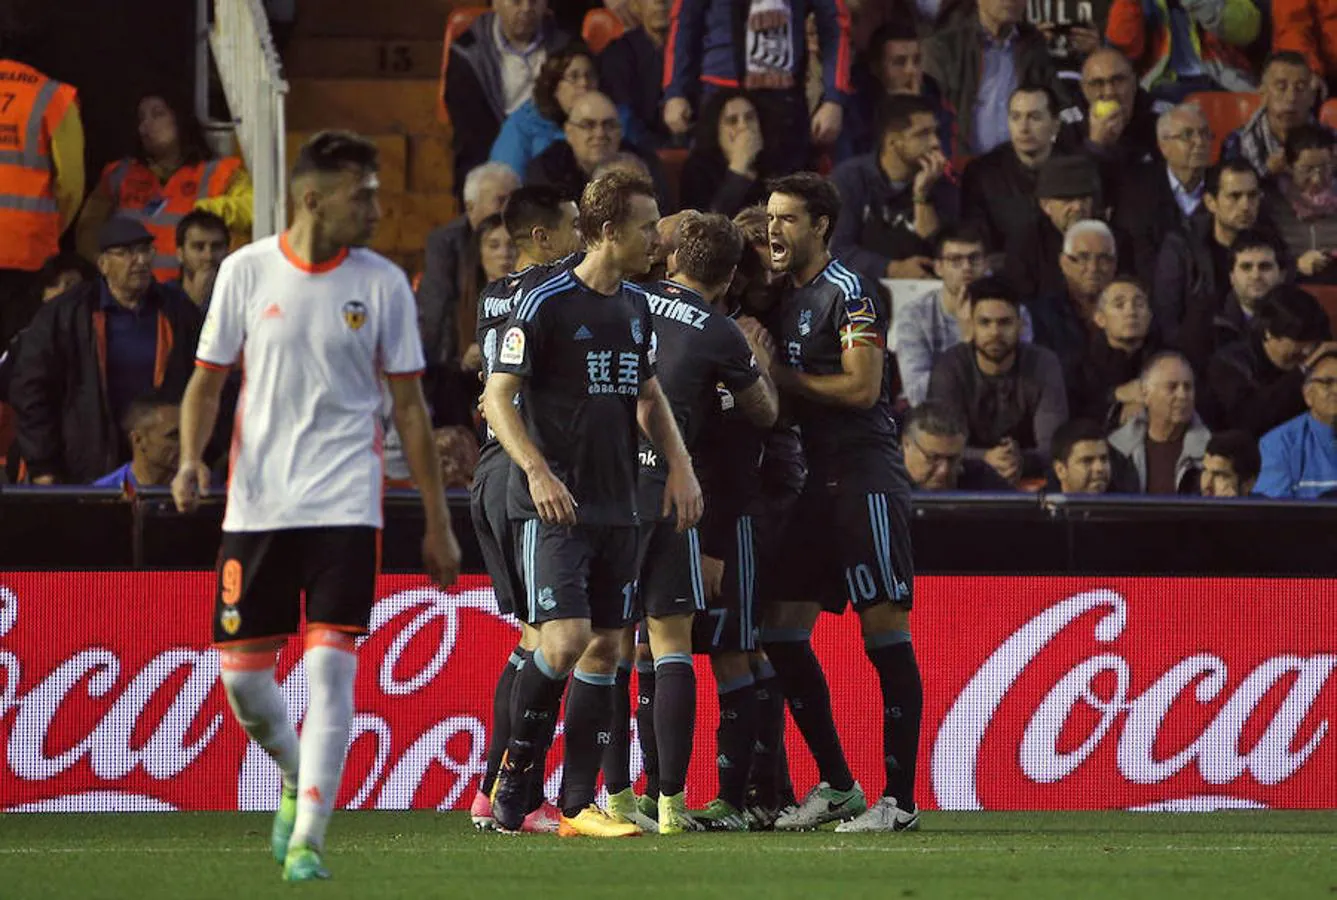 Valencia 2 - 3 Real Sociedad